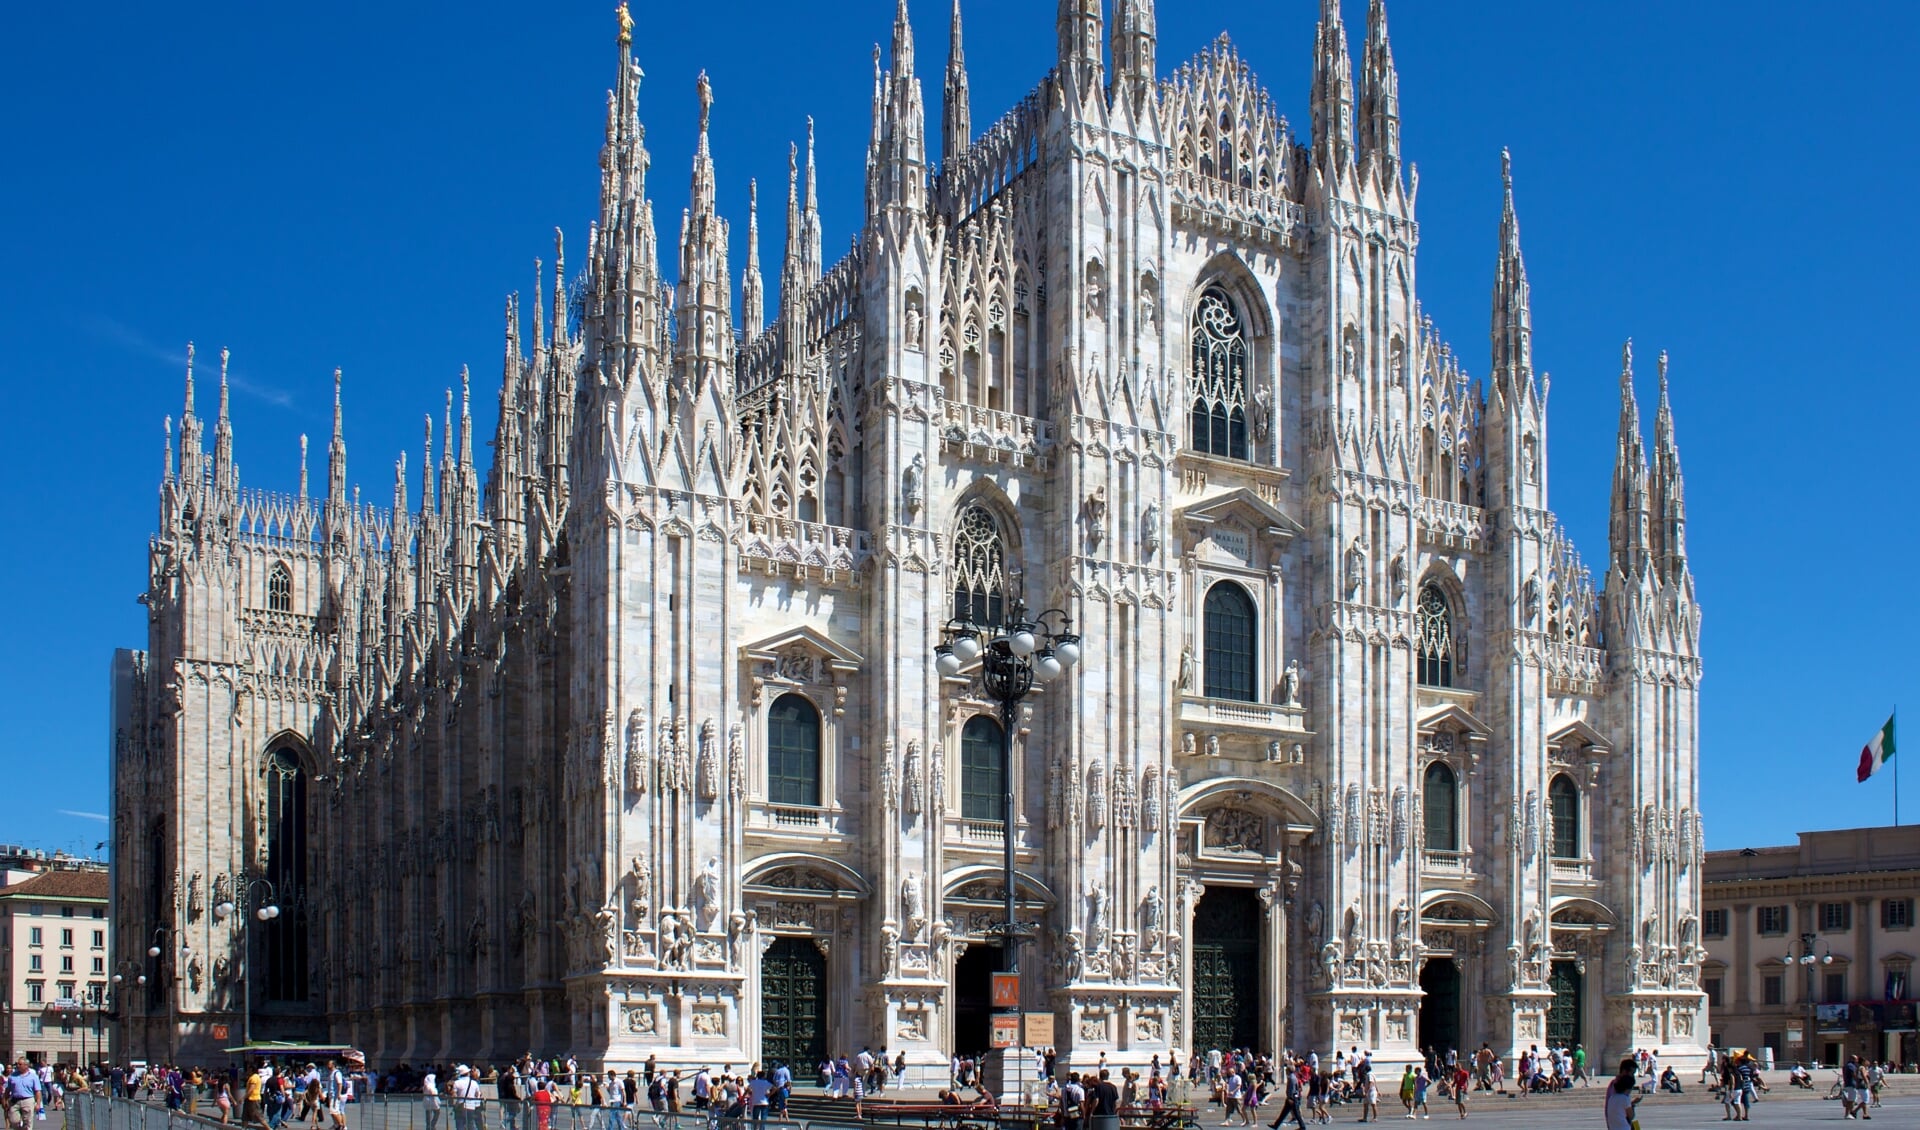 In Italië is veel prachtigs te zien, zoals de Dom van Milaan, maar een boete kan de napret wat bederven. Foto: Jiuguang Wang/Wikimedia